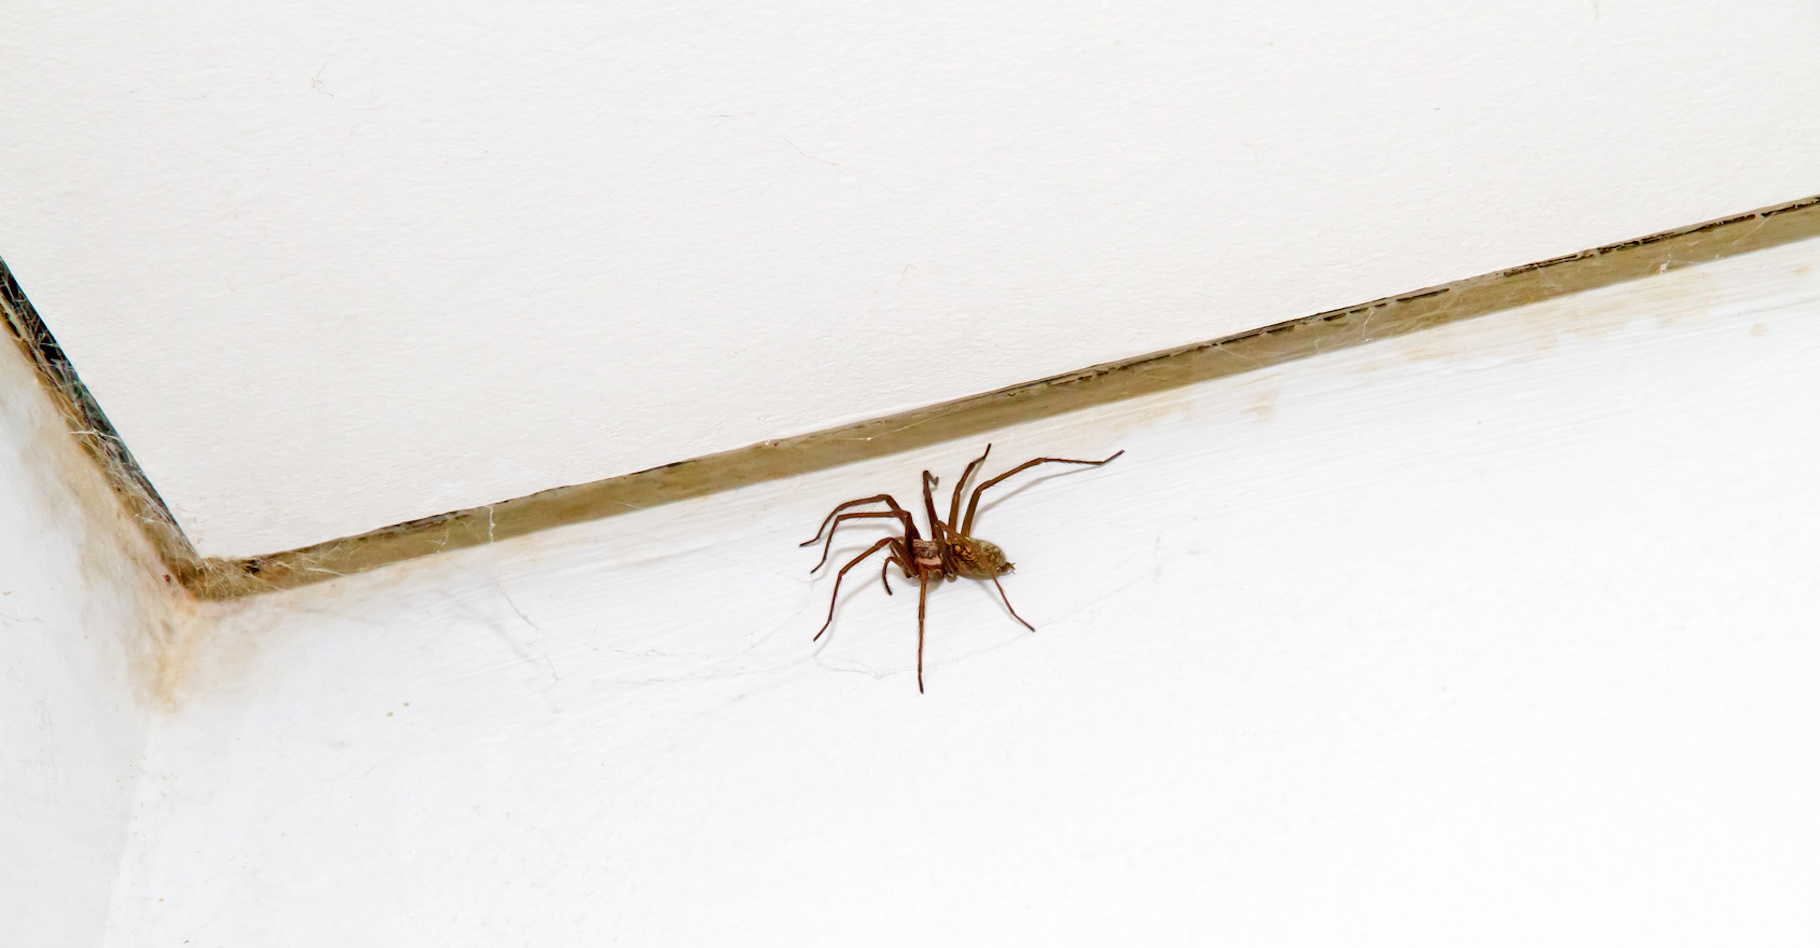 C’est à la mi-septembre et aux alentours de 19 h&nbsp;35&nbsp;qu’un maximum d’araignées sont observées dans nos maisons. Le résultat d’un mode de vie et/ou de biais d’observations. © Jürgen Fälchle, Fotolia